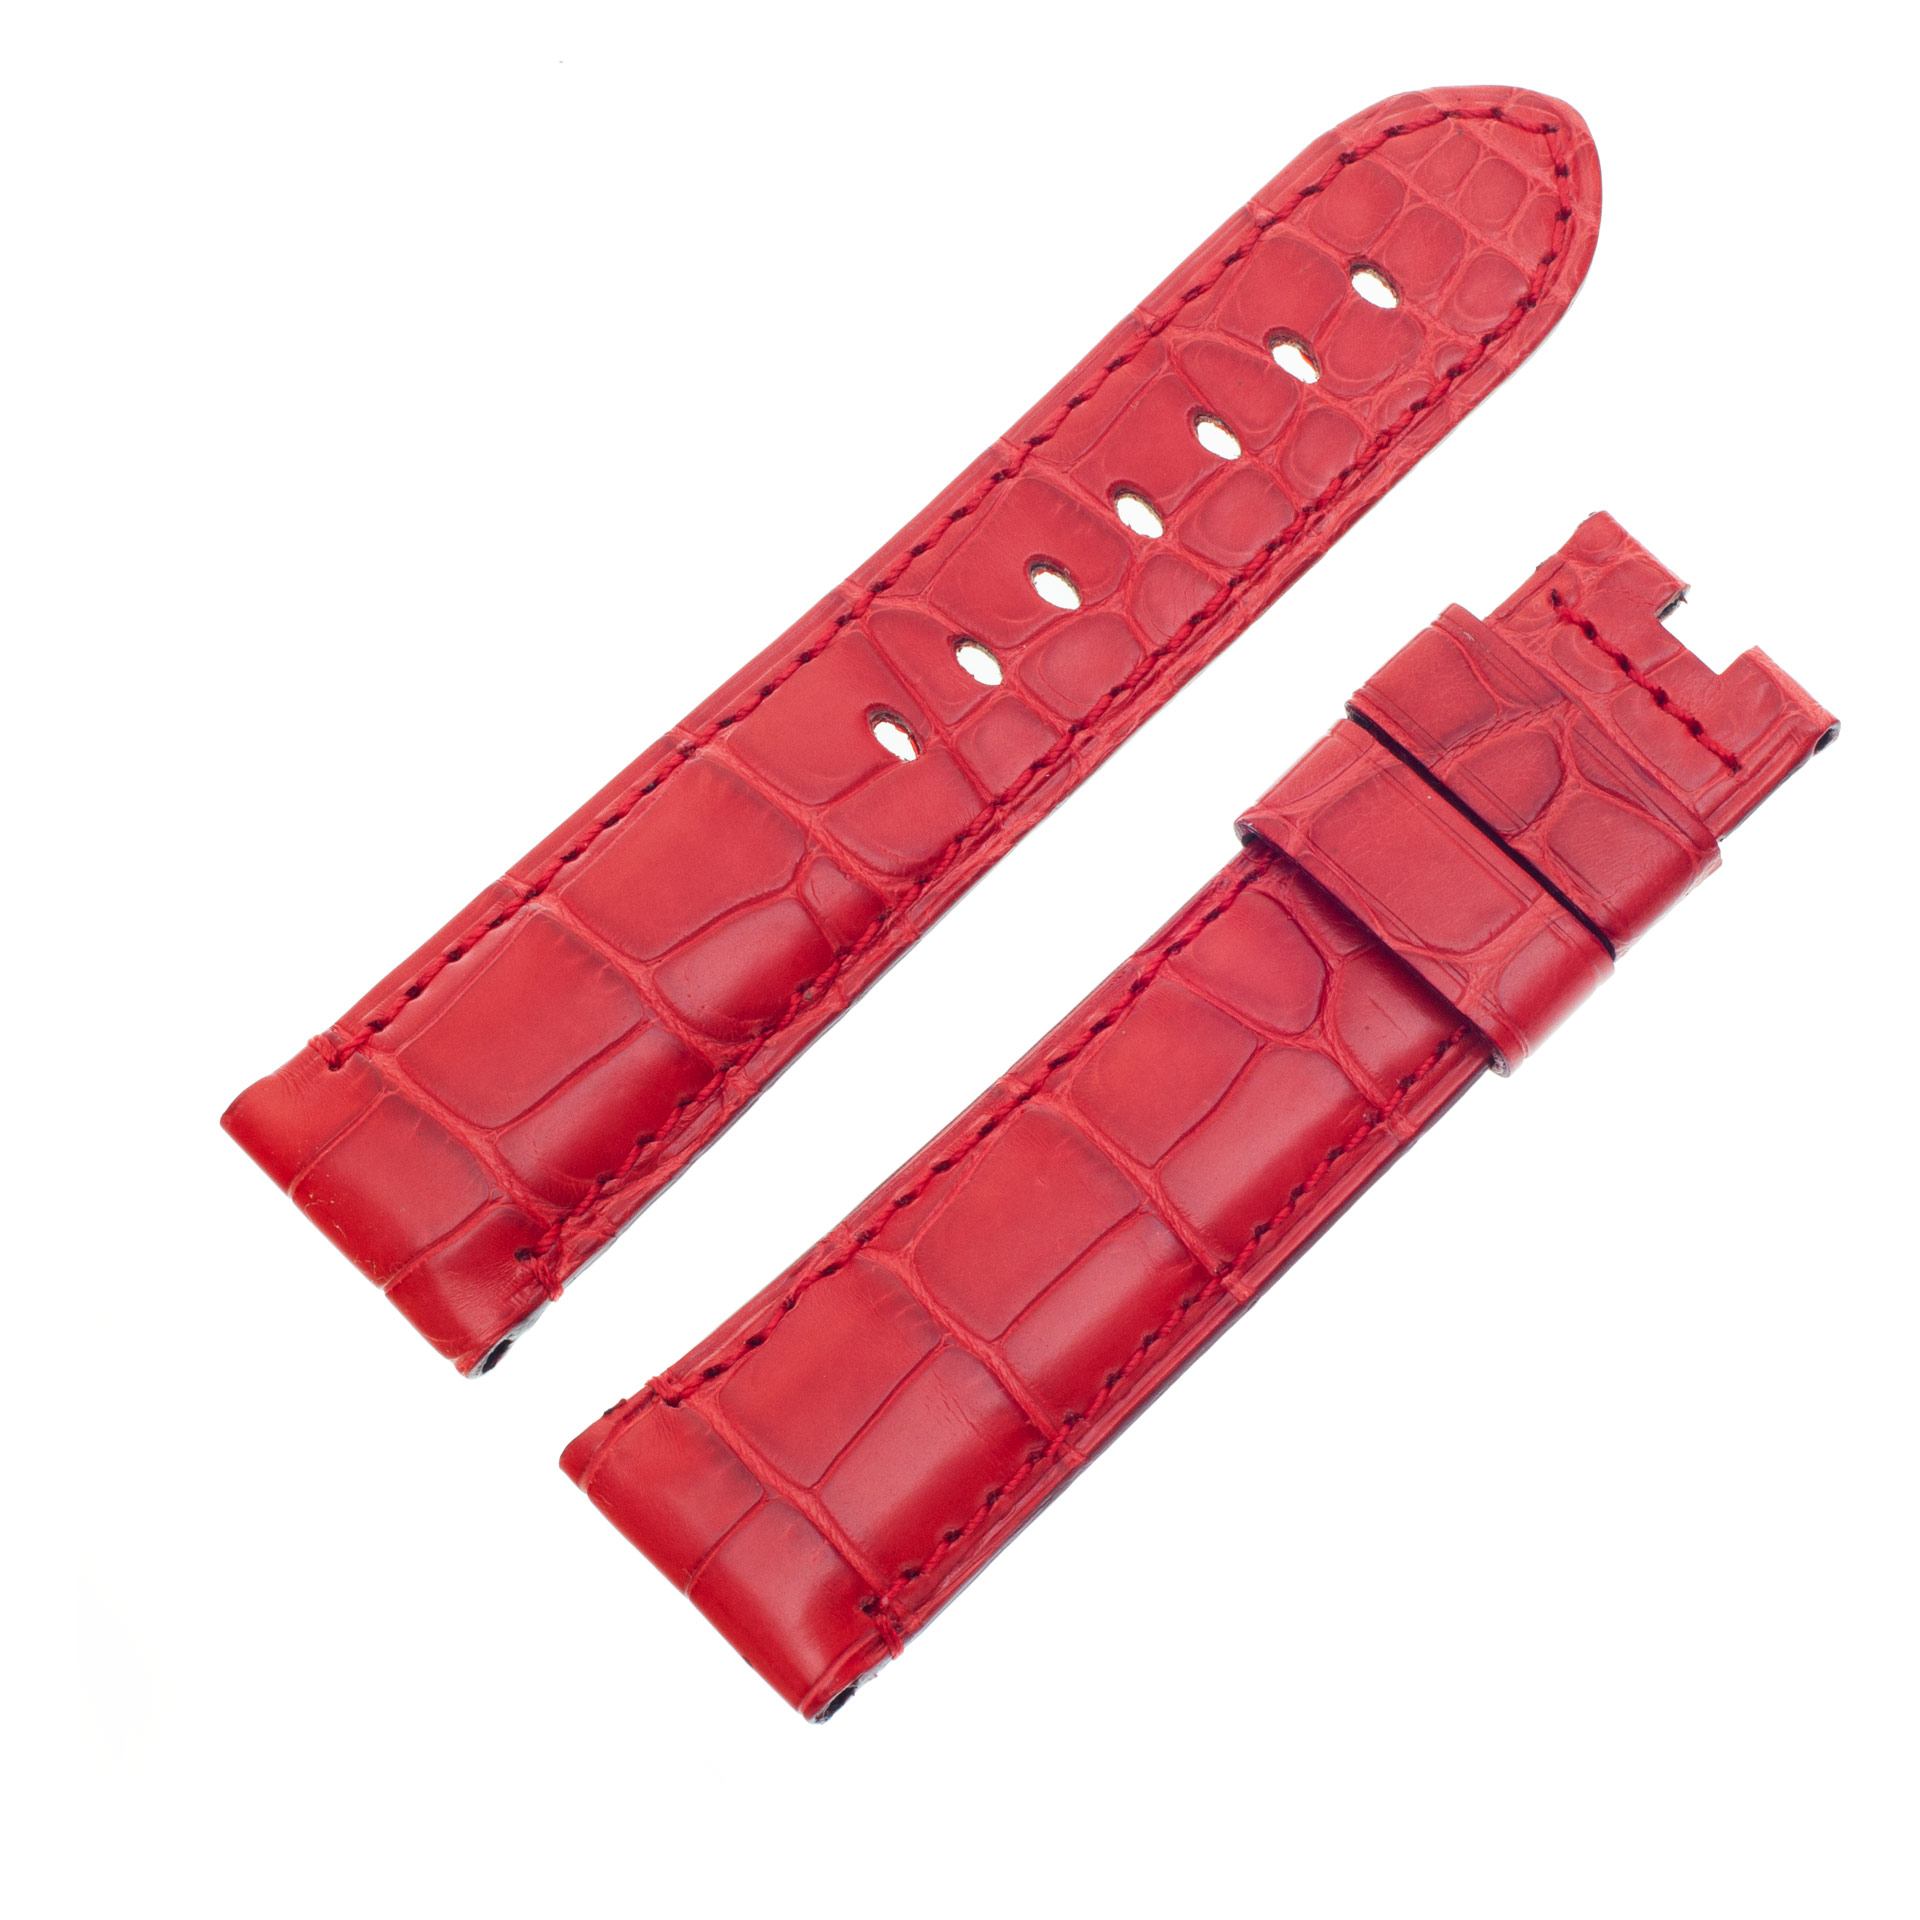 Panerai Red Alligator Strap (24mmx22mm)